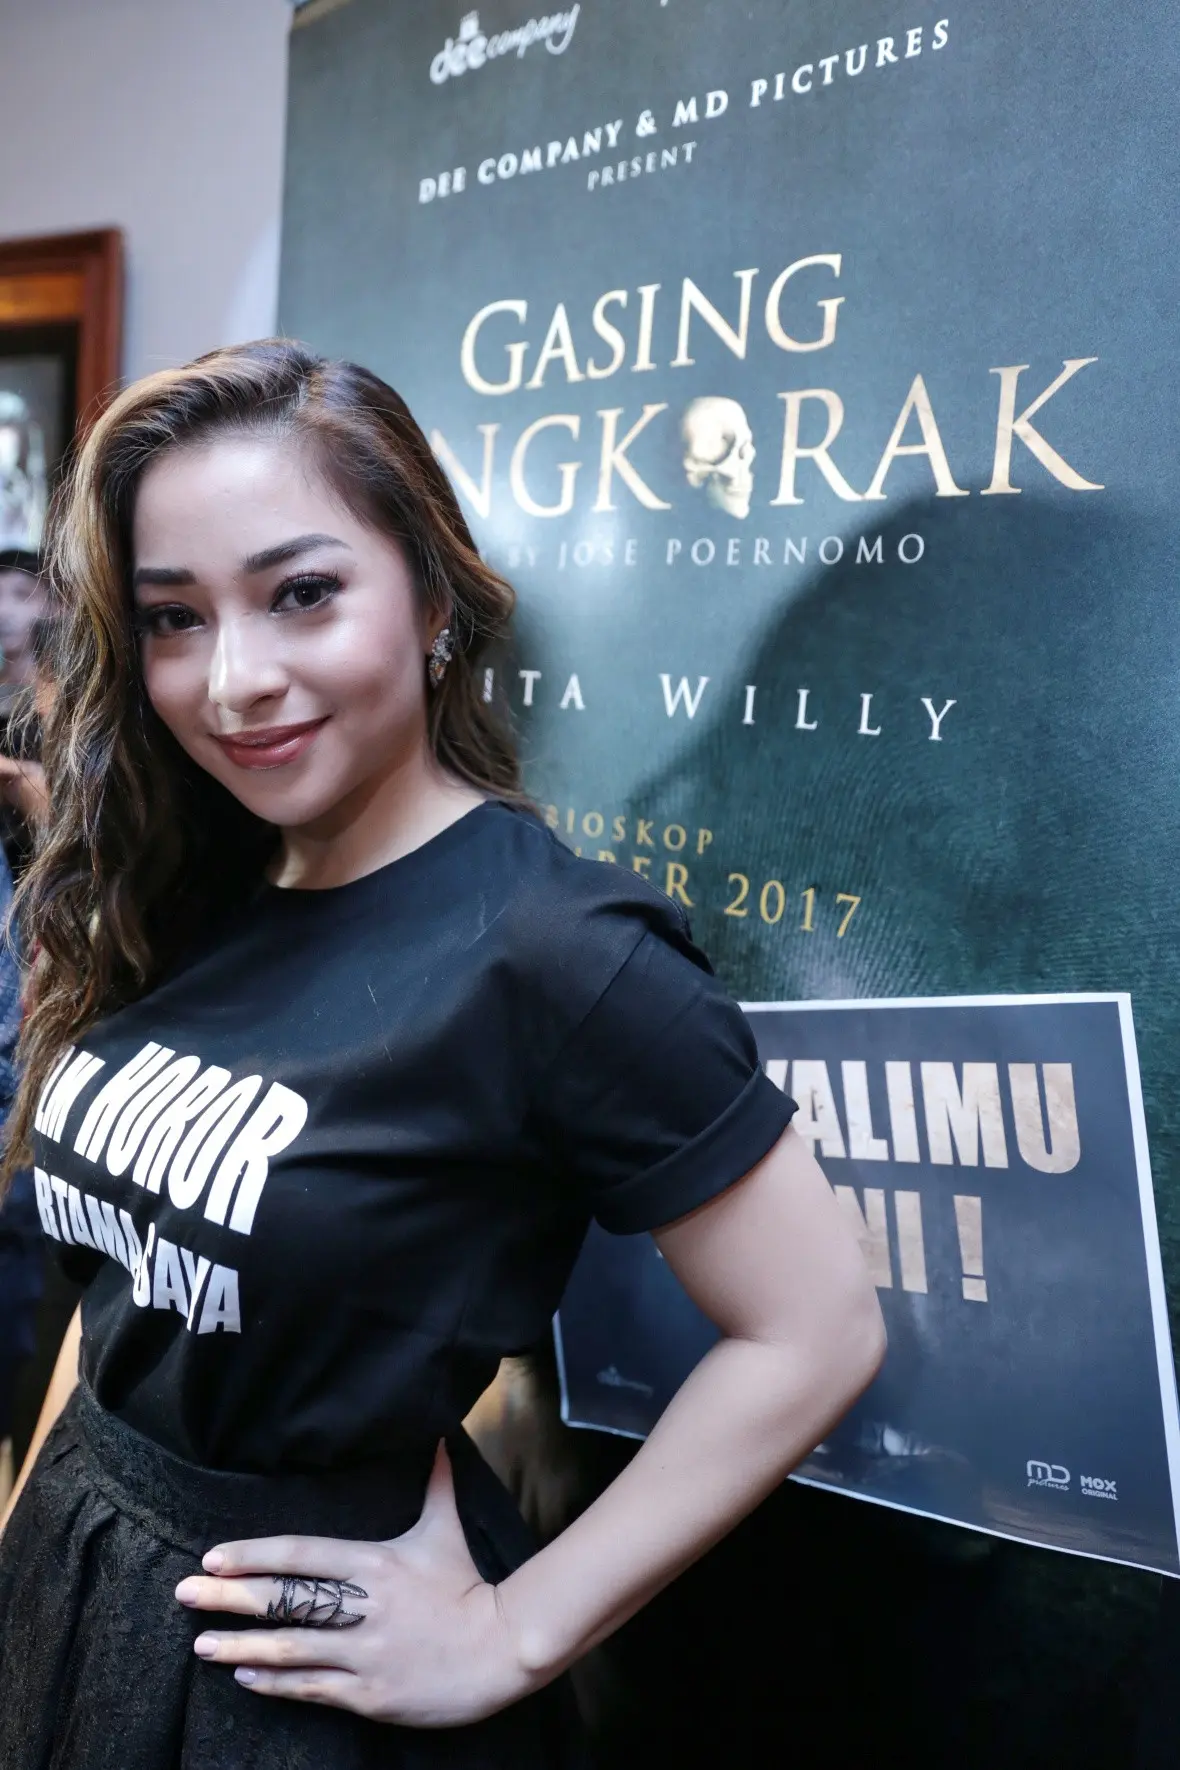 Nikita Willy di Preskon film Gasing Tengkorak (Adrian Putra/bintang.com)